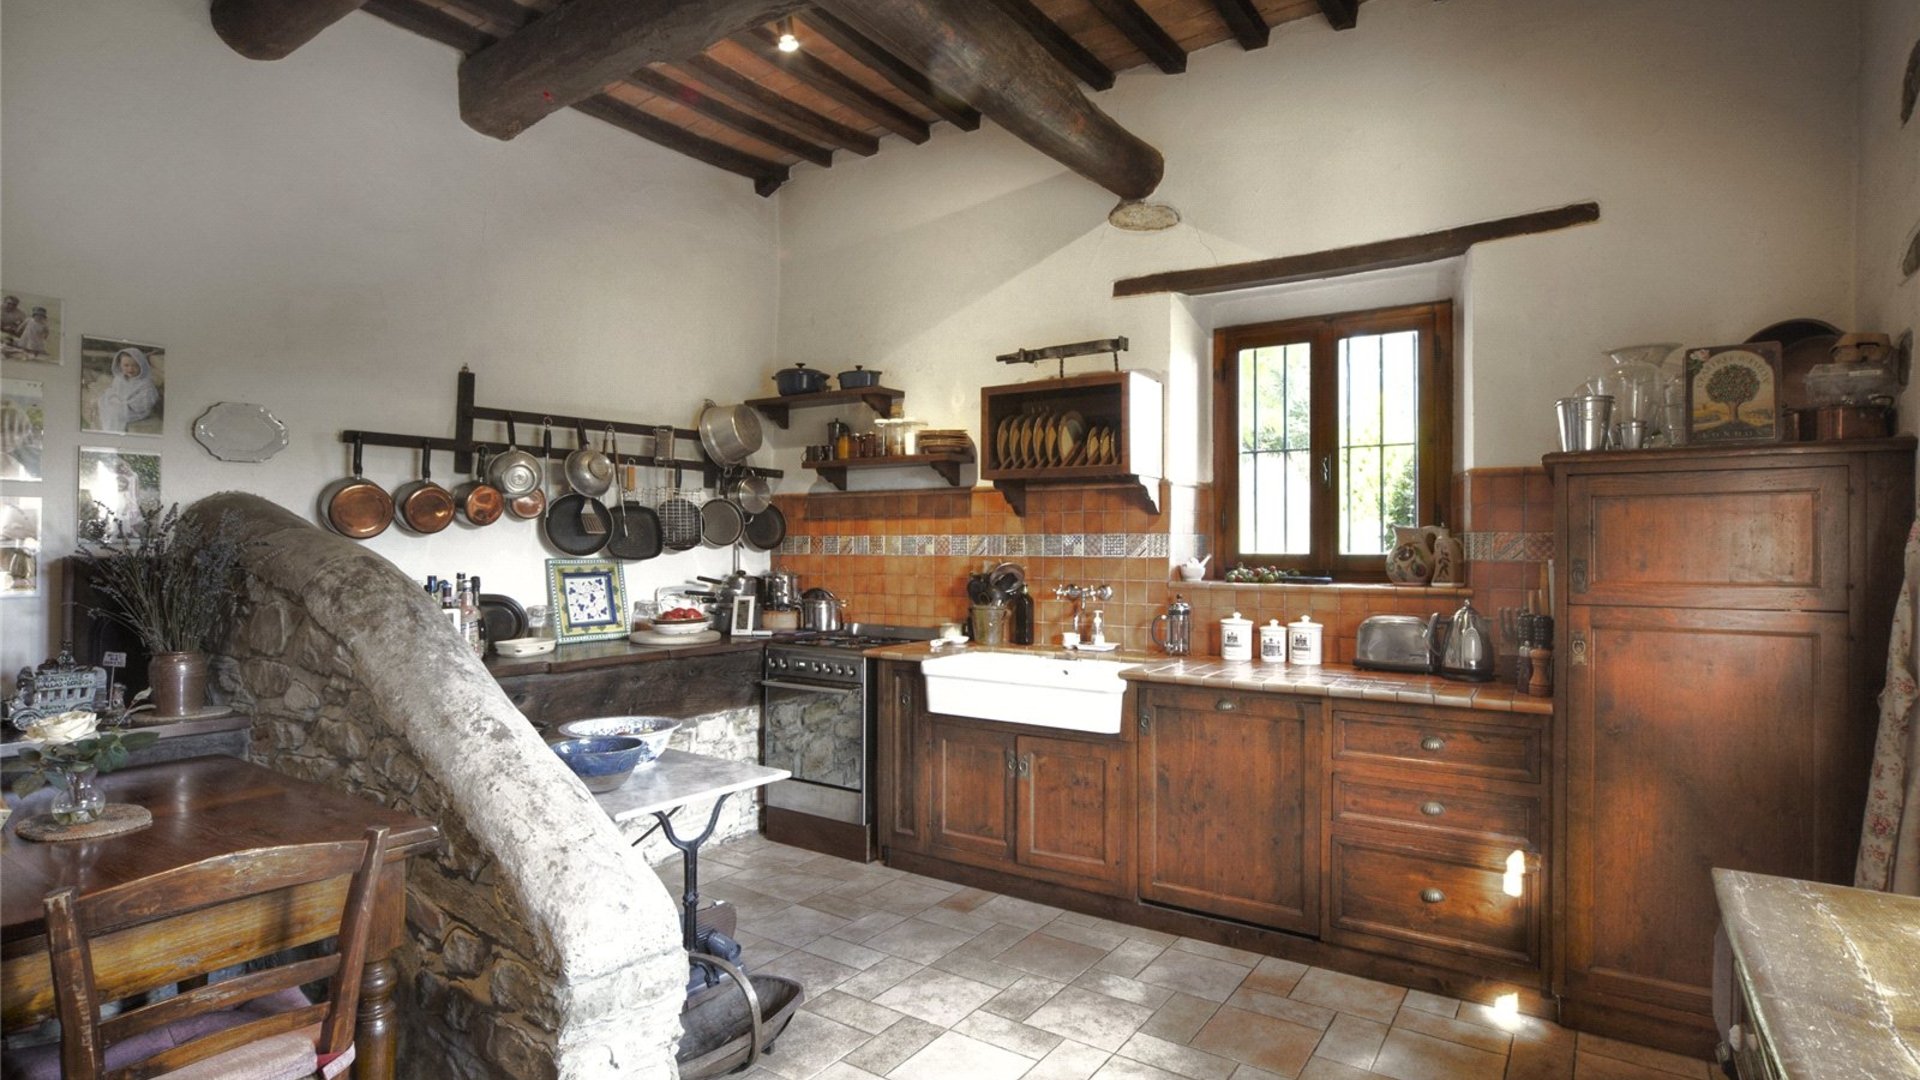 Casa Vicorati, Florentine Hills, Italy